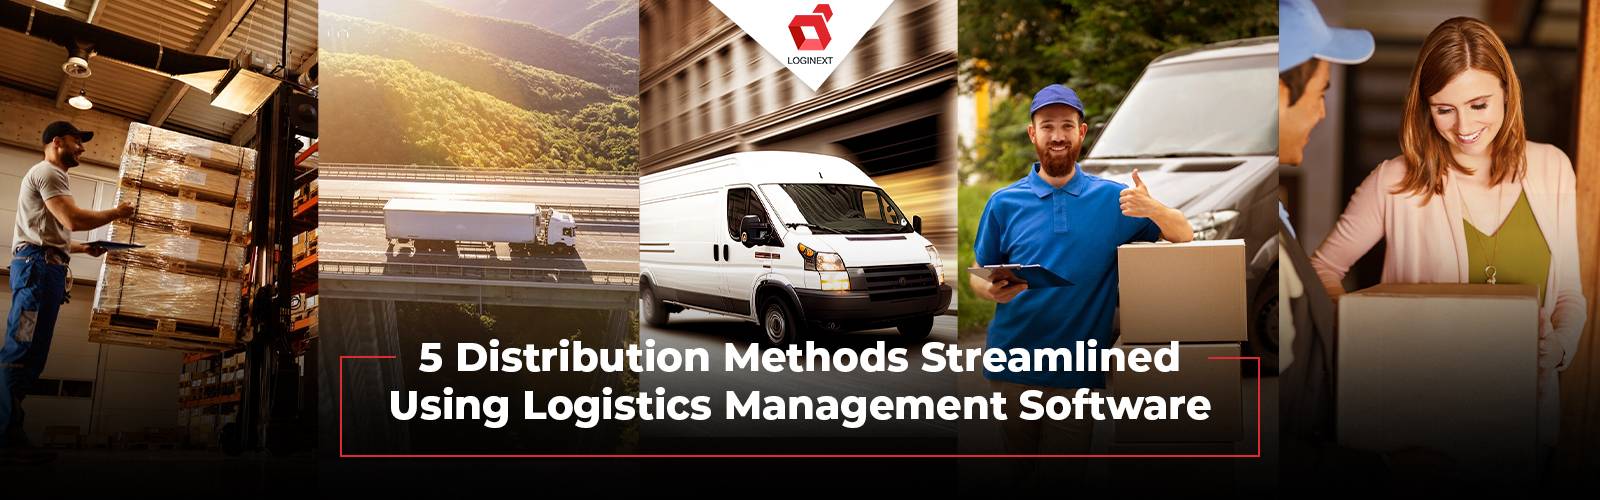 Logistics management software streamlines distribution methods